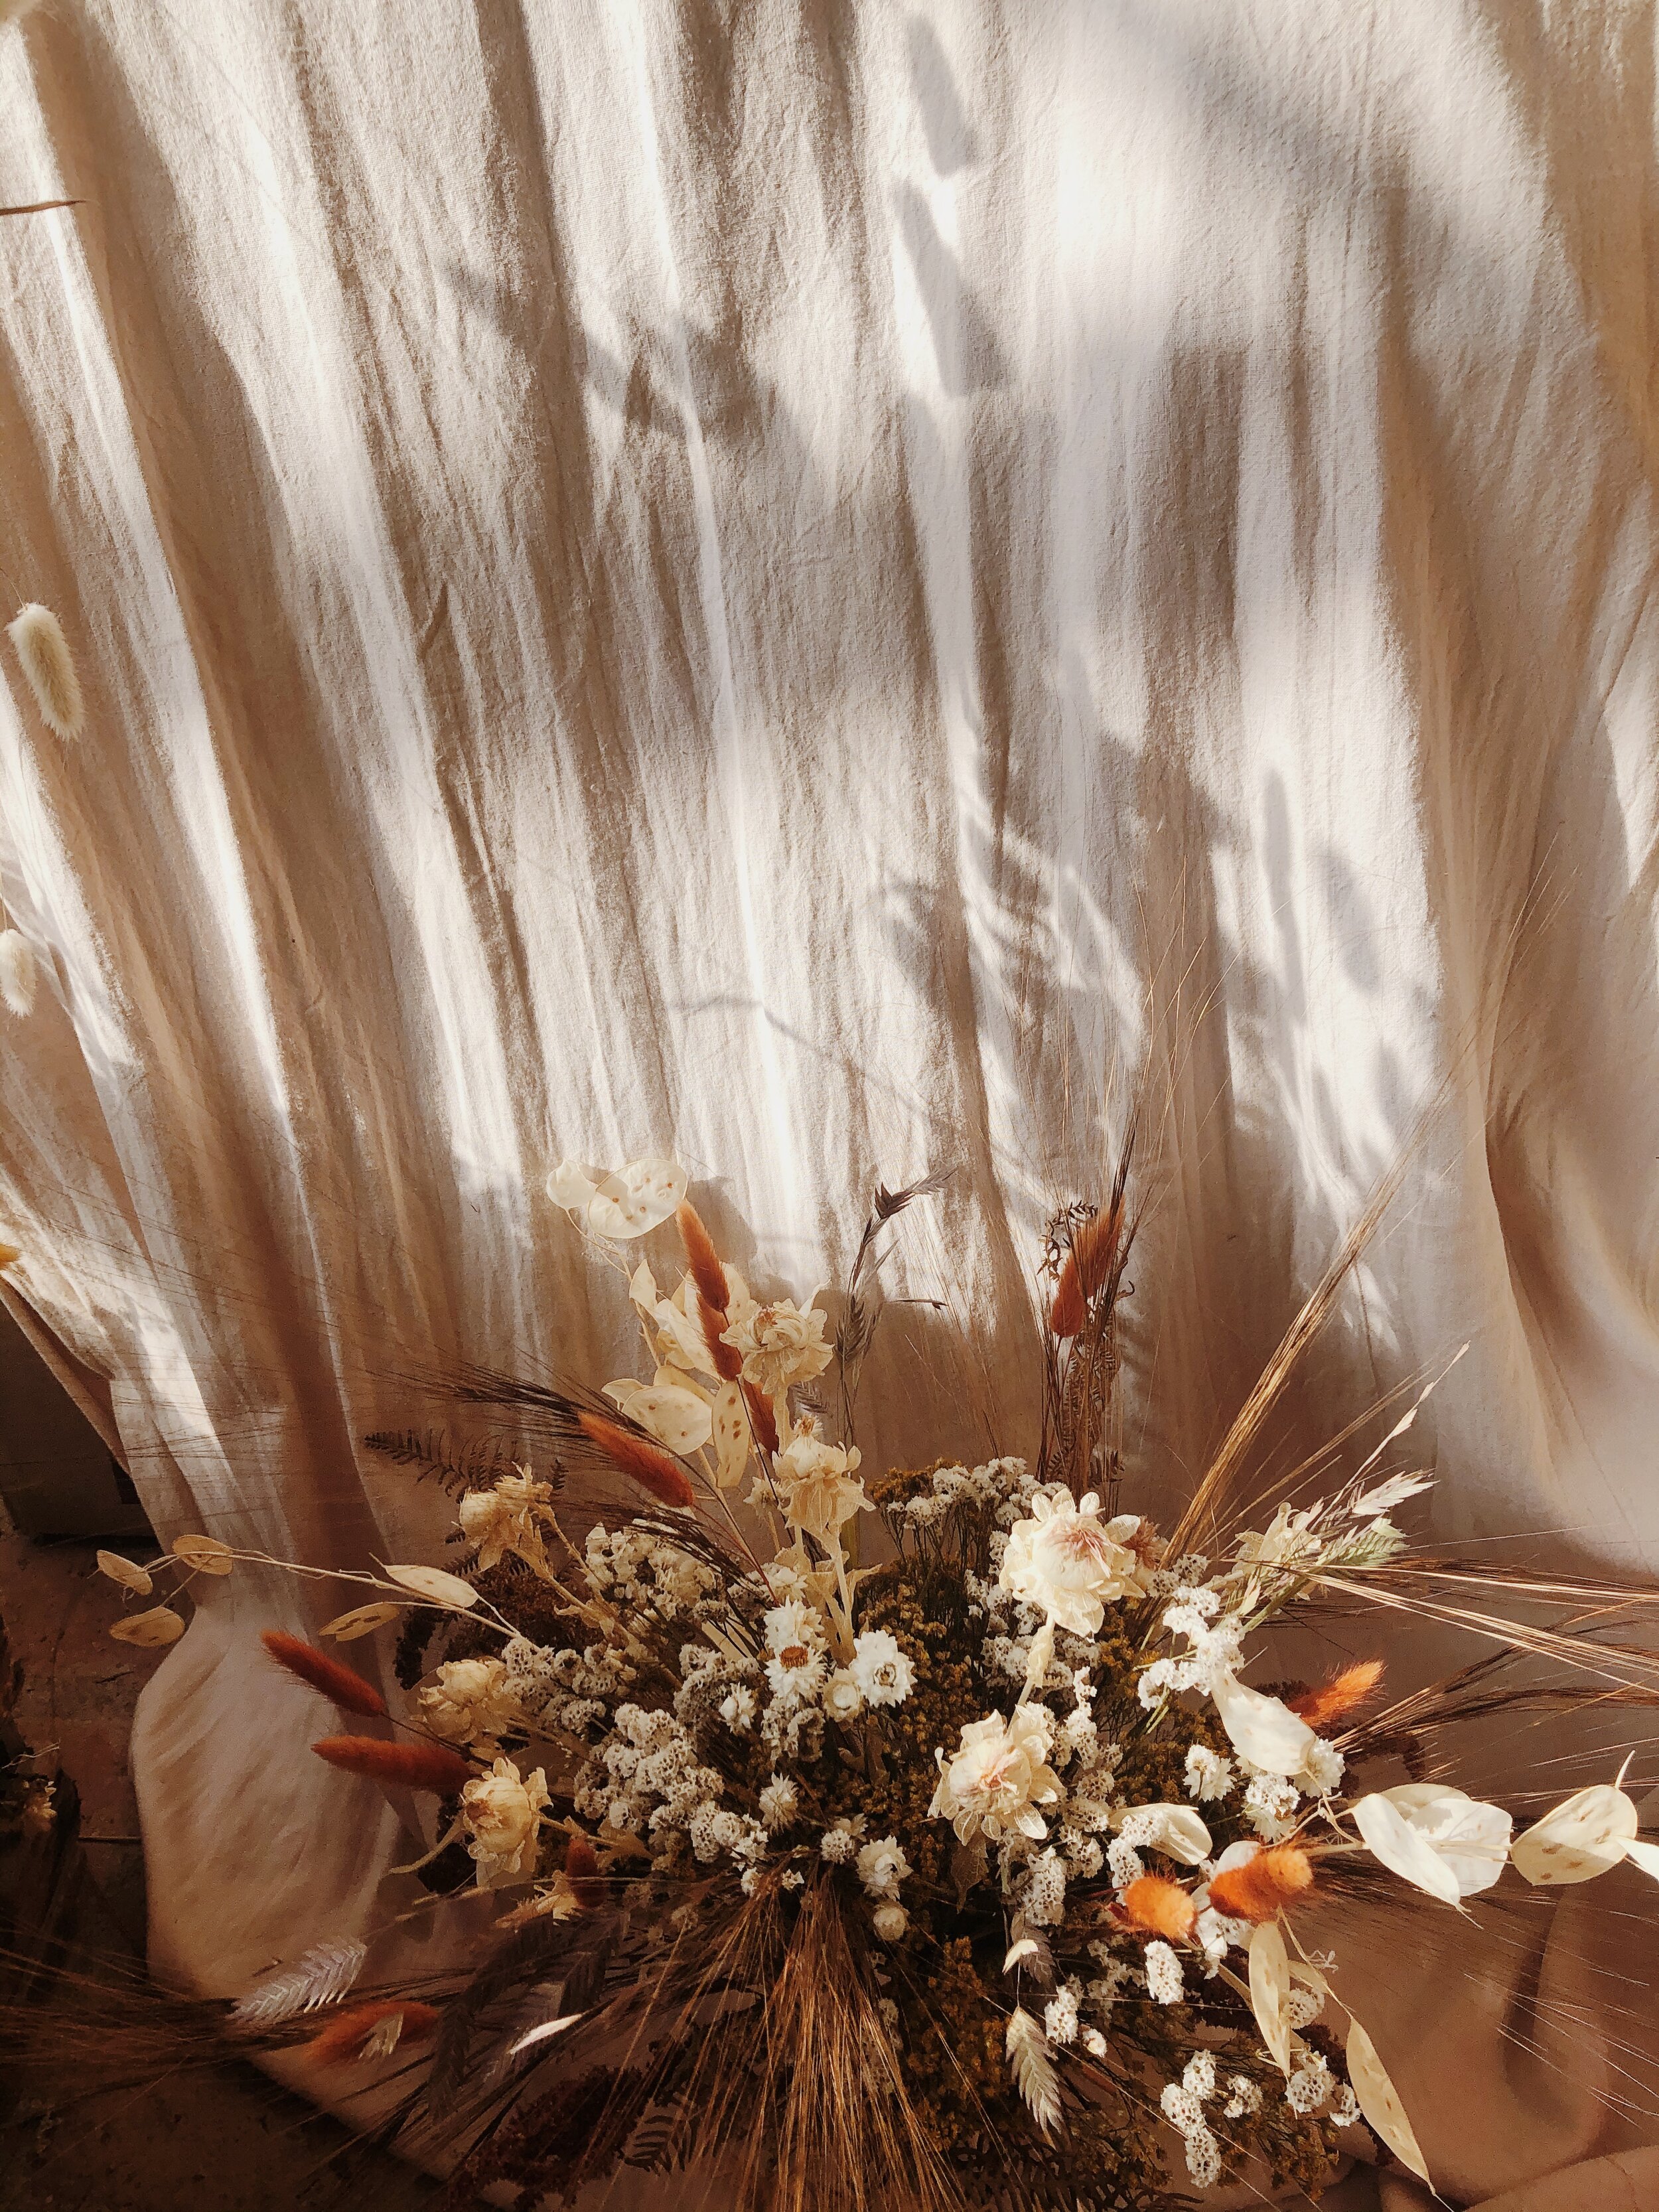 Bouquet de fleurs séchées — Atelier Prairies